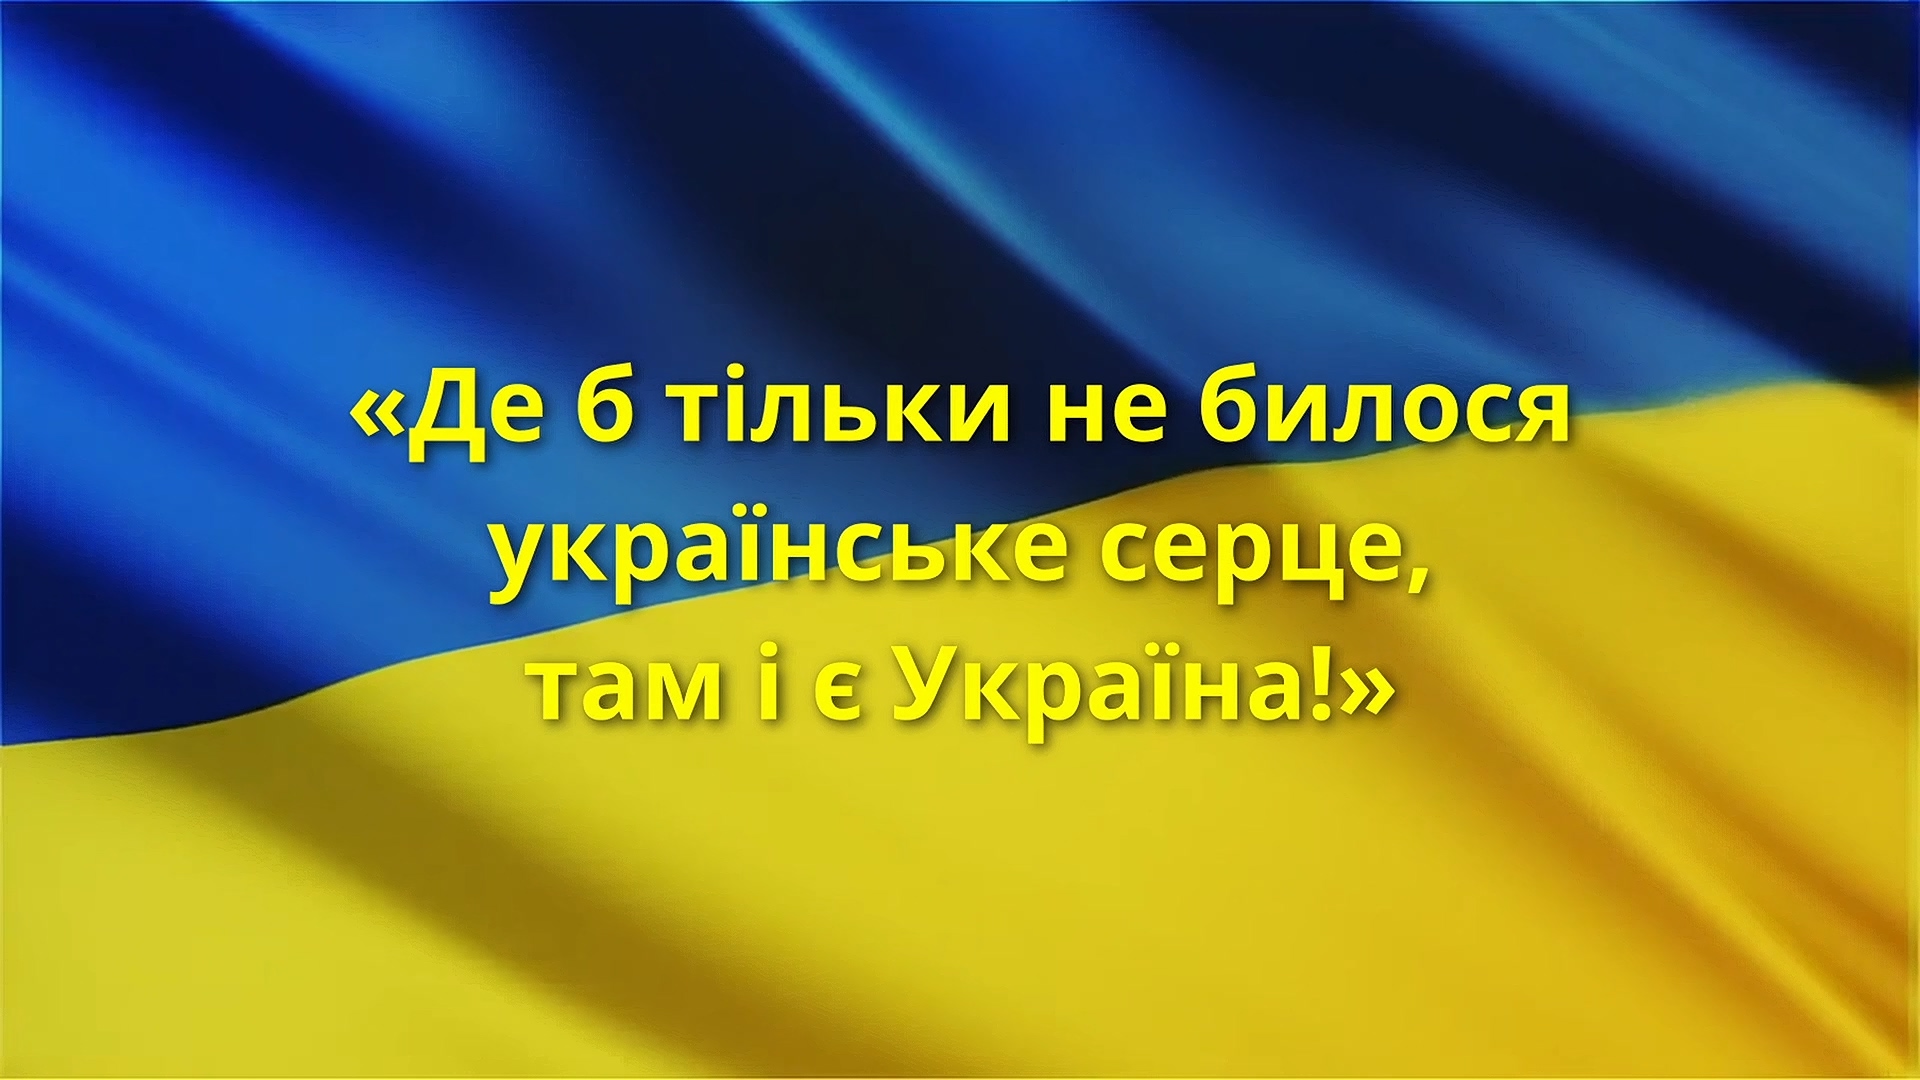 "Де б тільки не билося українське серце, та і є Україна!"